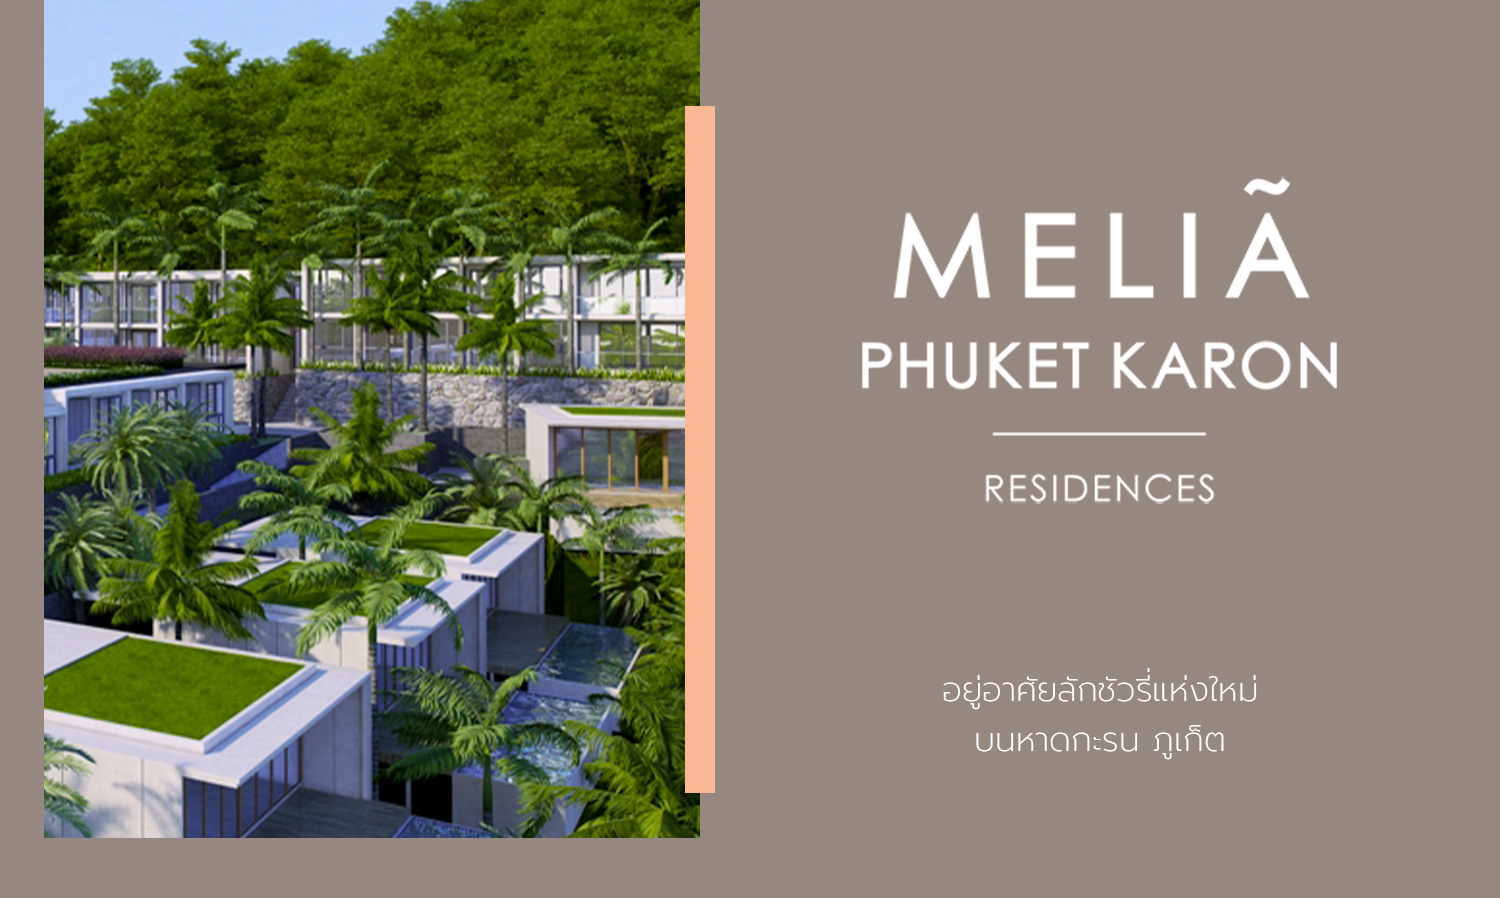 Melia Phuket Karon Residences อยู่อาศัยลักชัวรี่แห่งใหม่ บนหาดกะรน ภูเก็ต